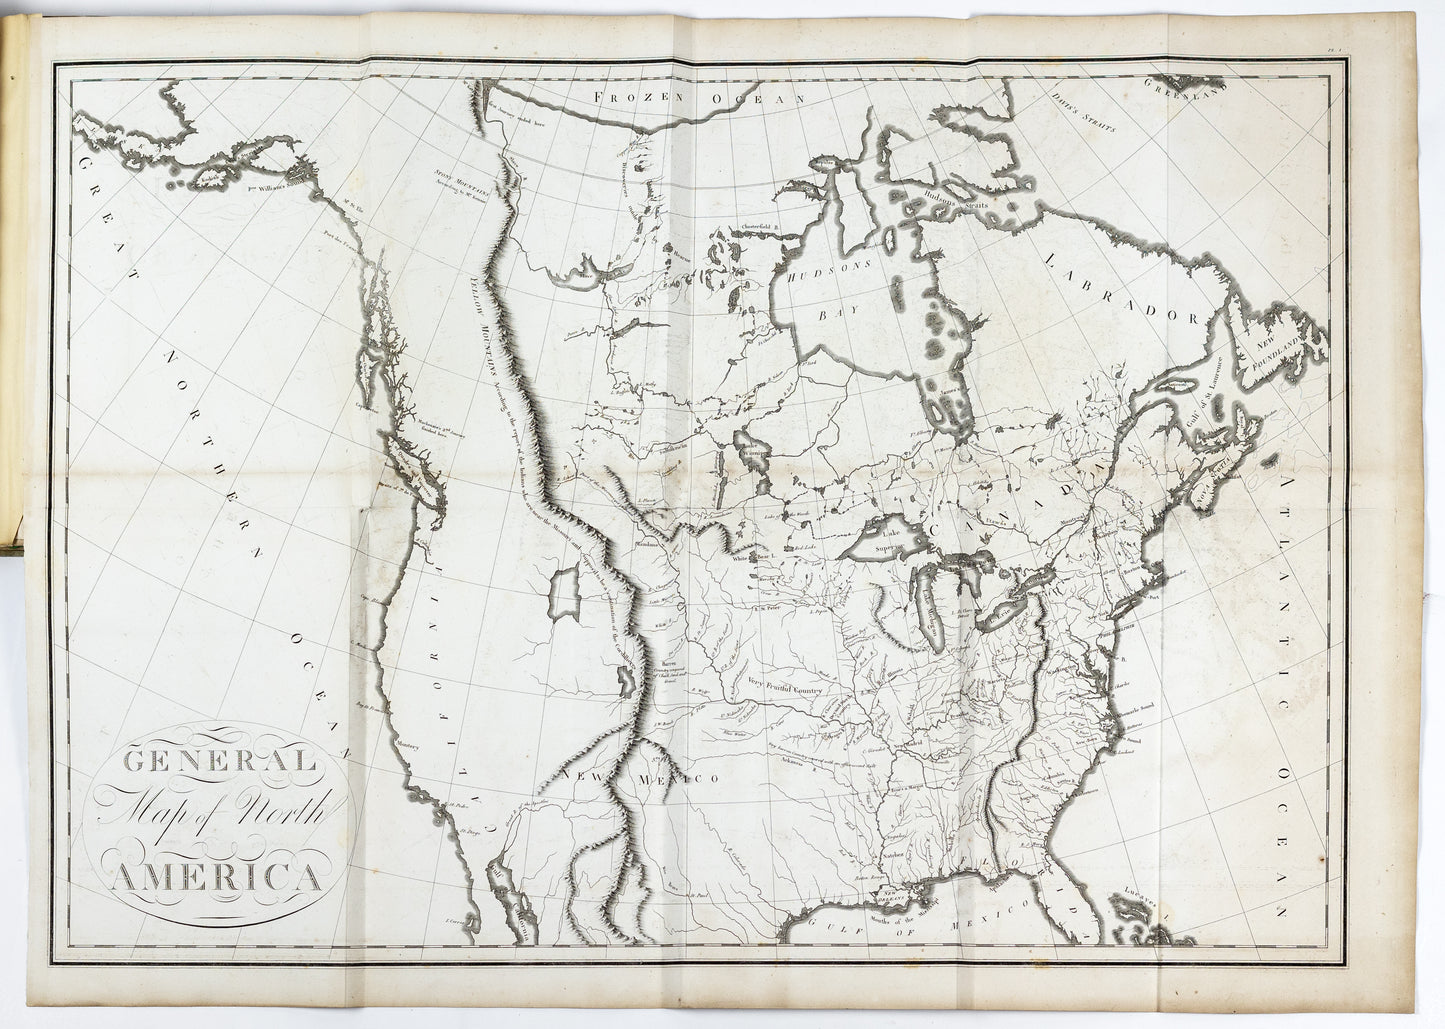 COLLOT, Georges Henri Victor (1751-1805). Voyage dans l'Amérique septentrionale, ou Description des pays arrosés par le Mississippi, l'Ohio, le Missouri et autres rivières affluentes